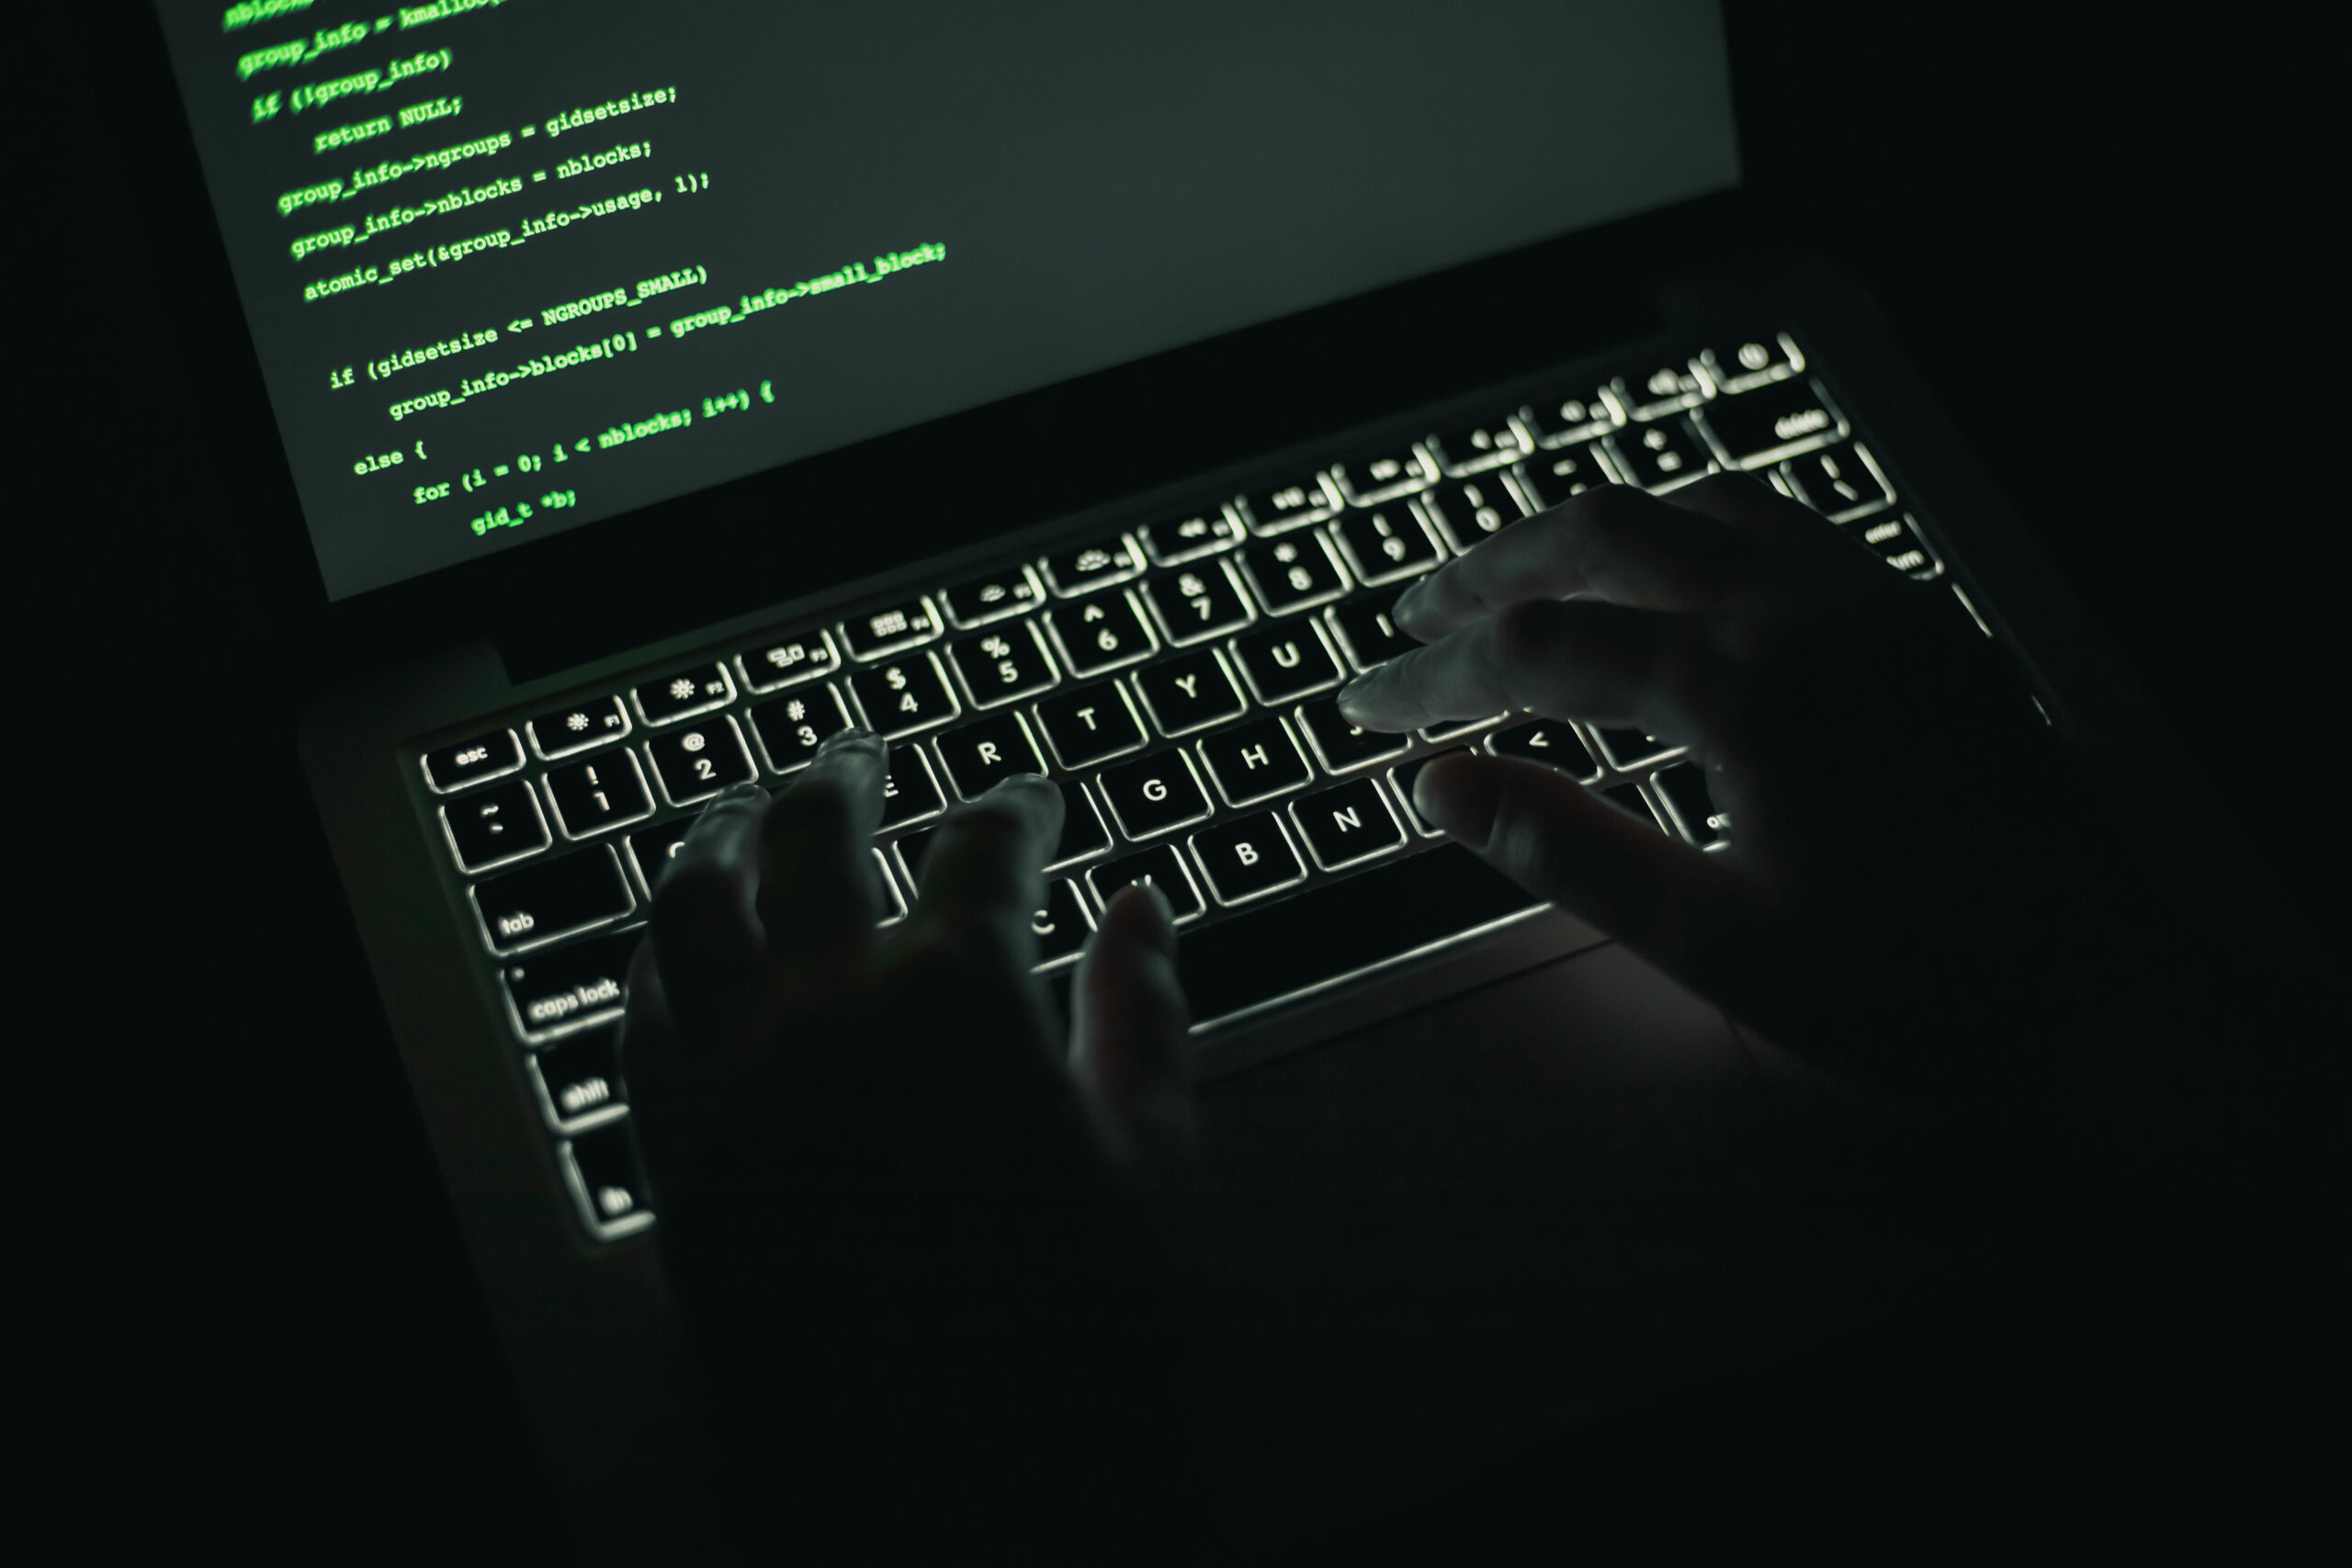 Sempre più attacchi hacker nel mondo: come possiamo proteggerci?